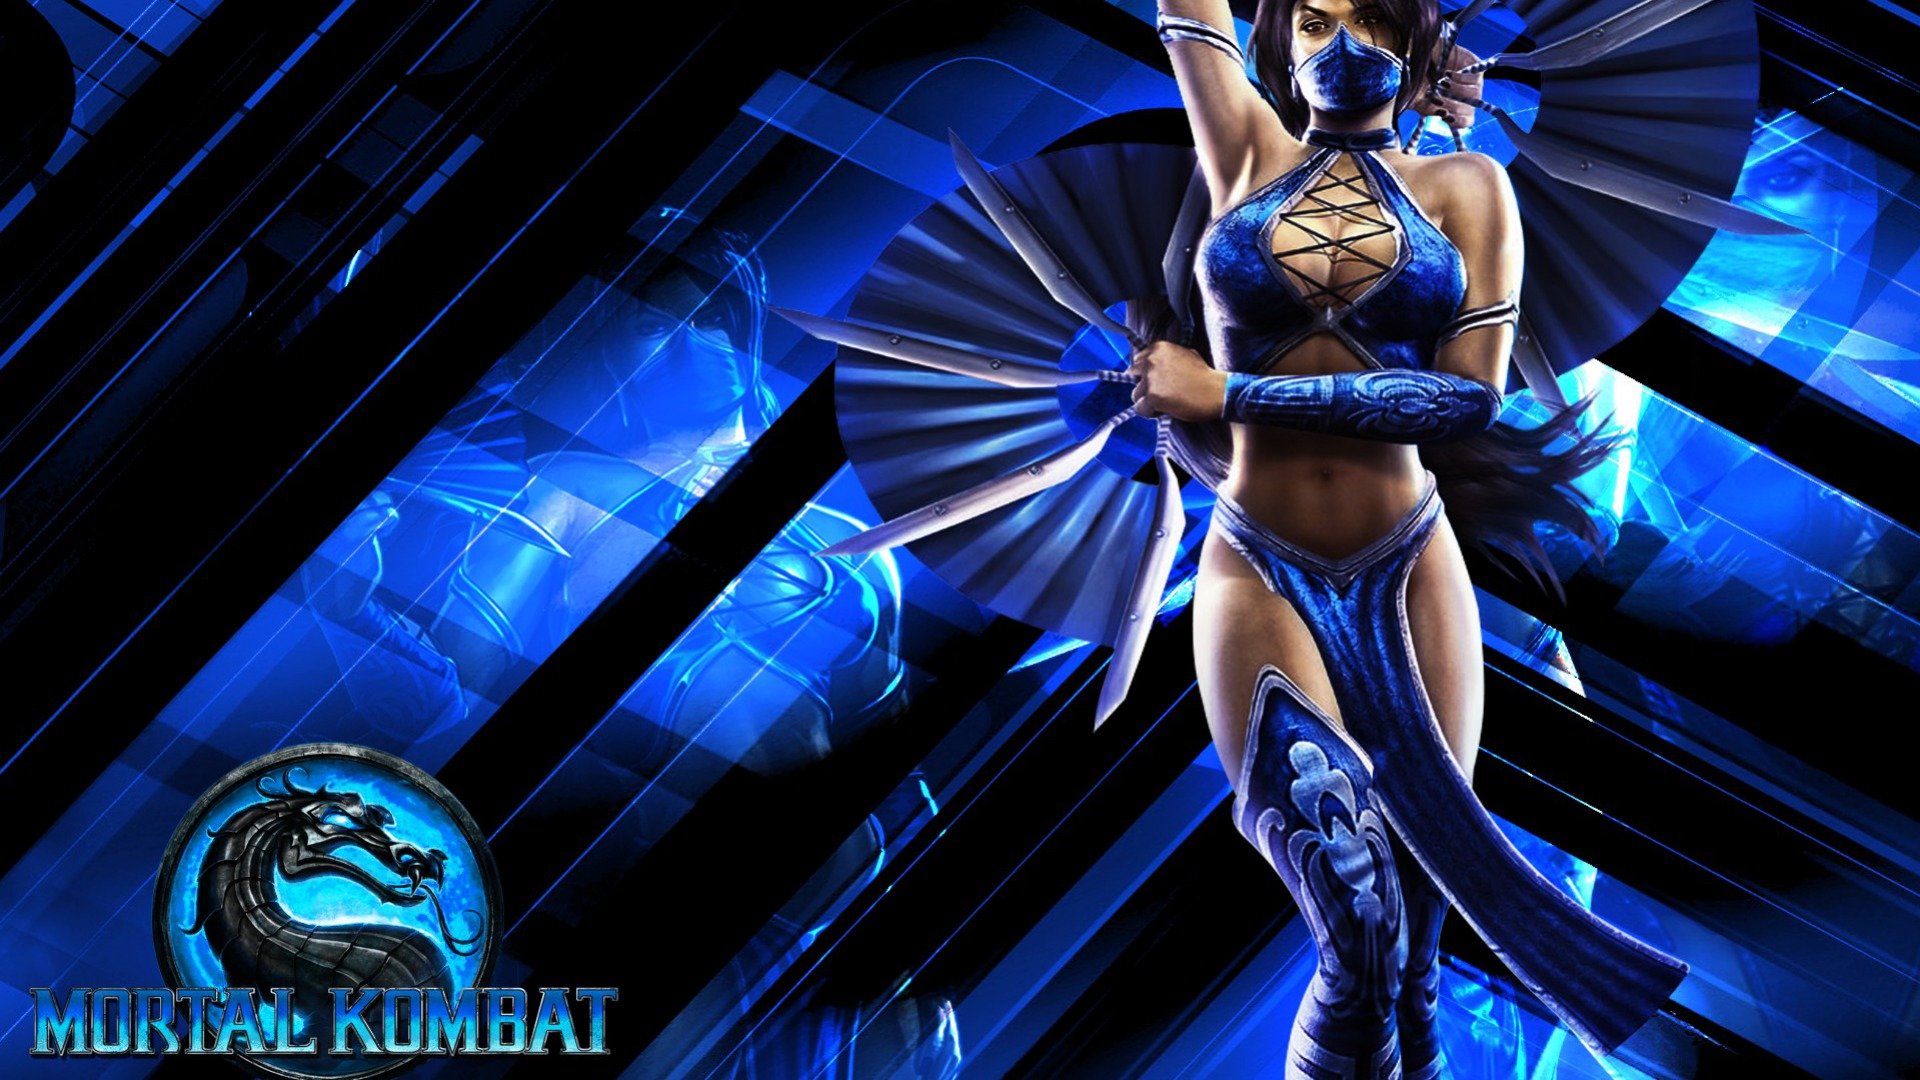 Download full hd Mortal Kombat PC wallpaper ID:183105 for free